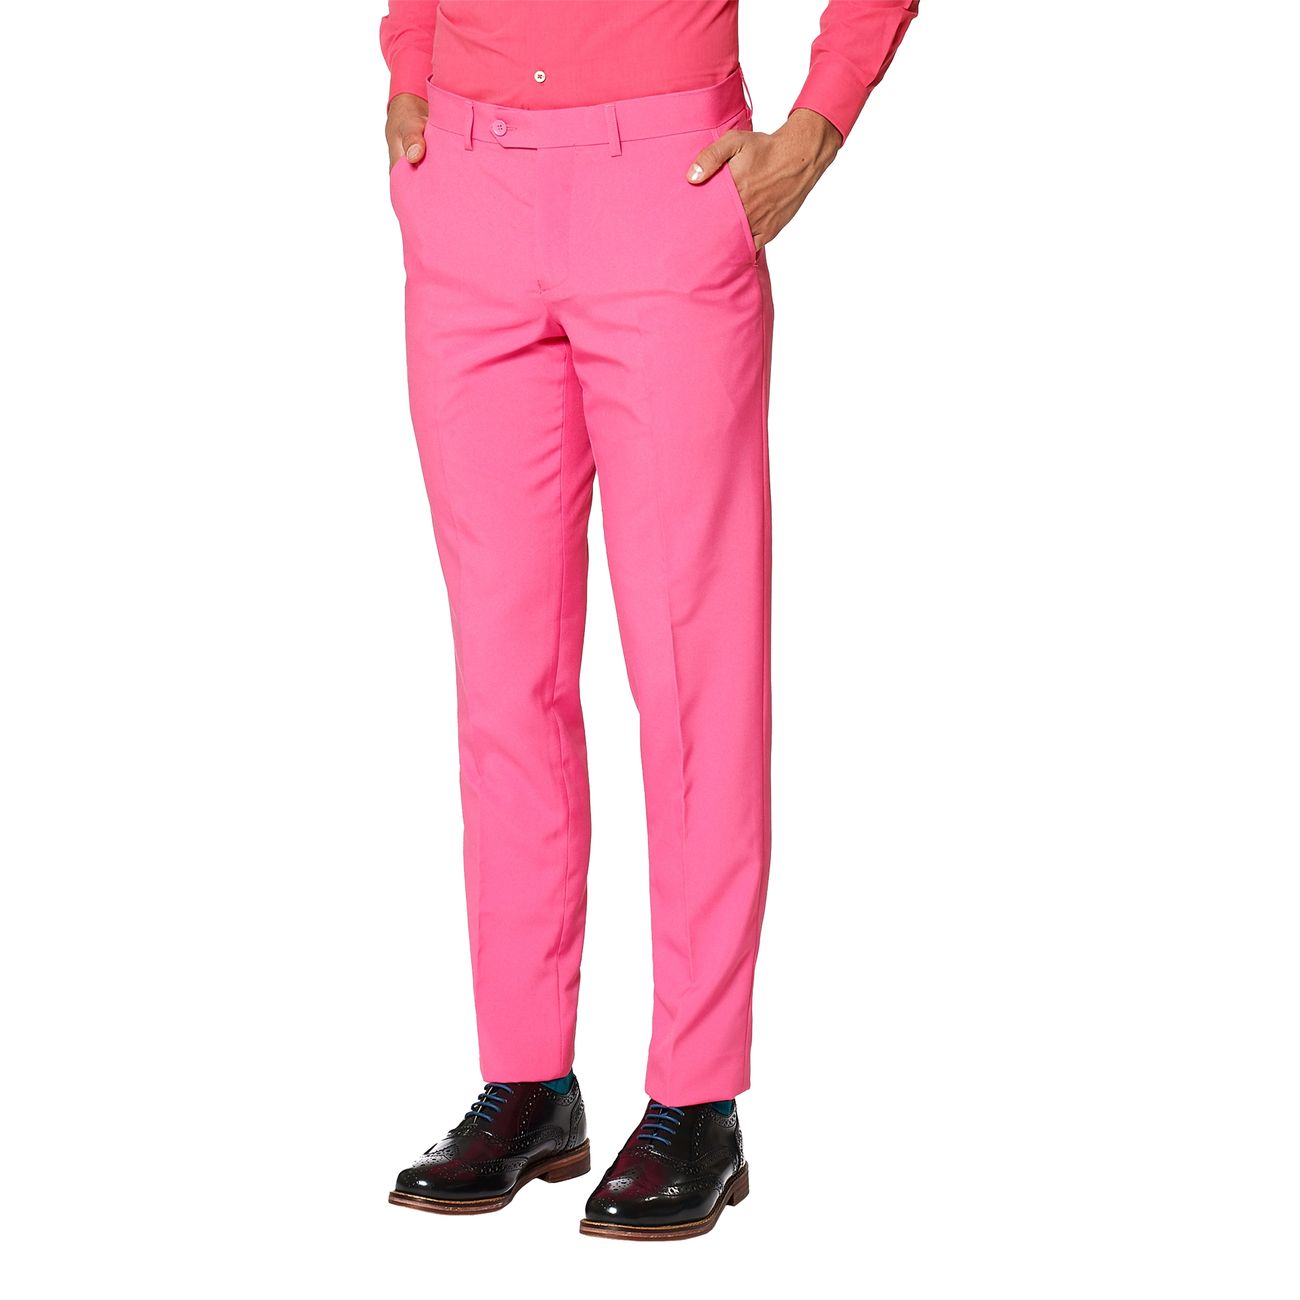 opposuits-mr-pink-kostym-16981-12